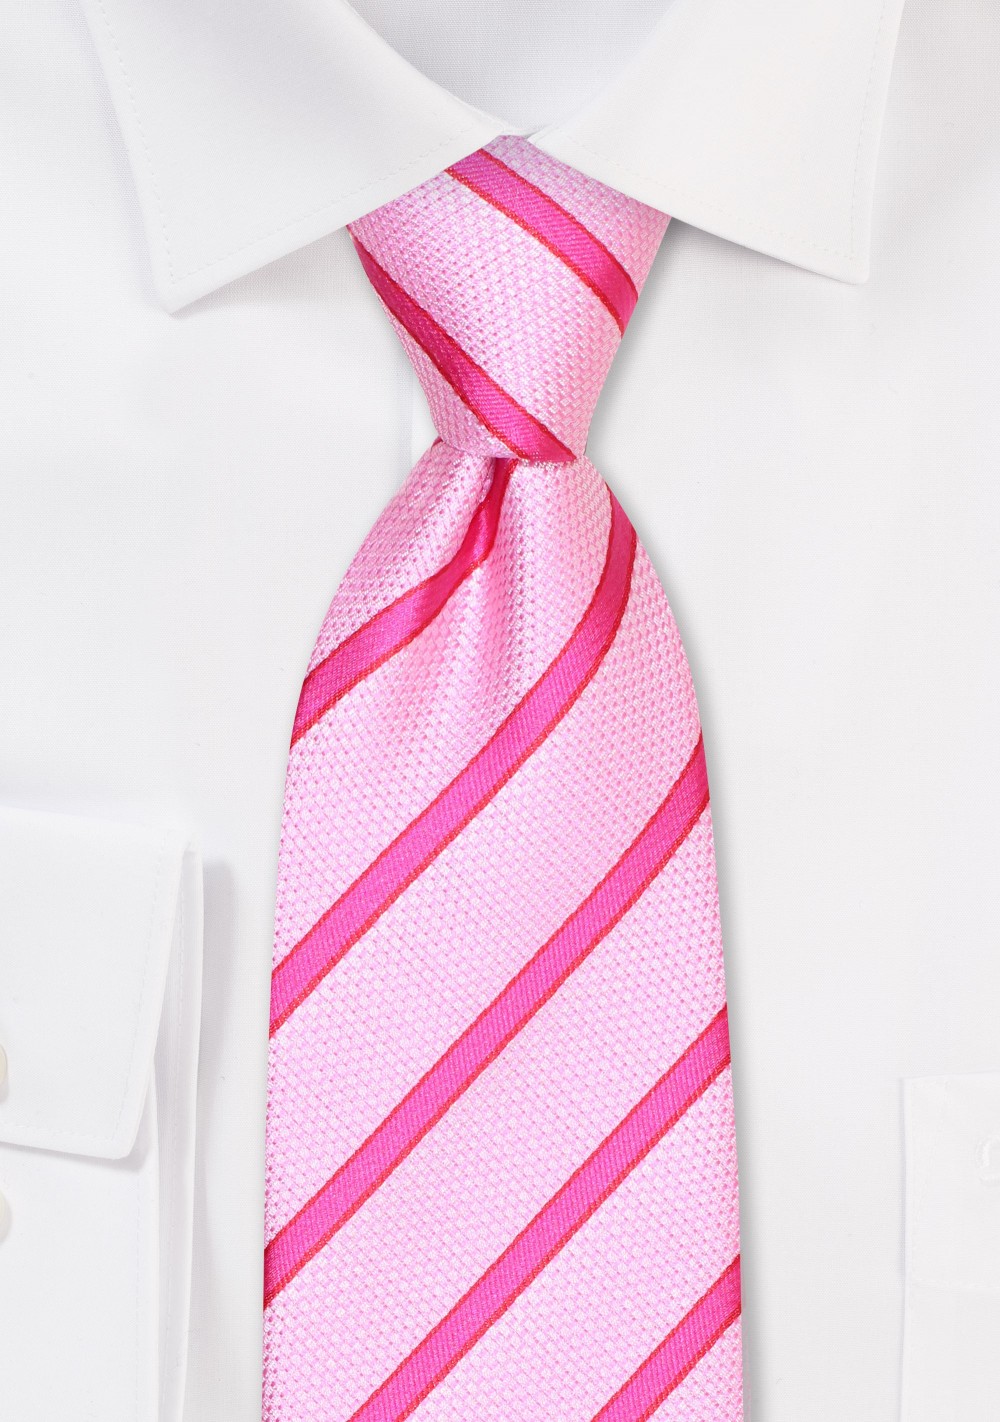 Striped Tie in Bubblegum Pink